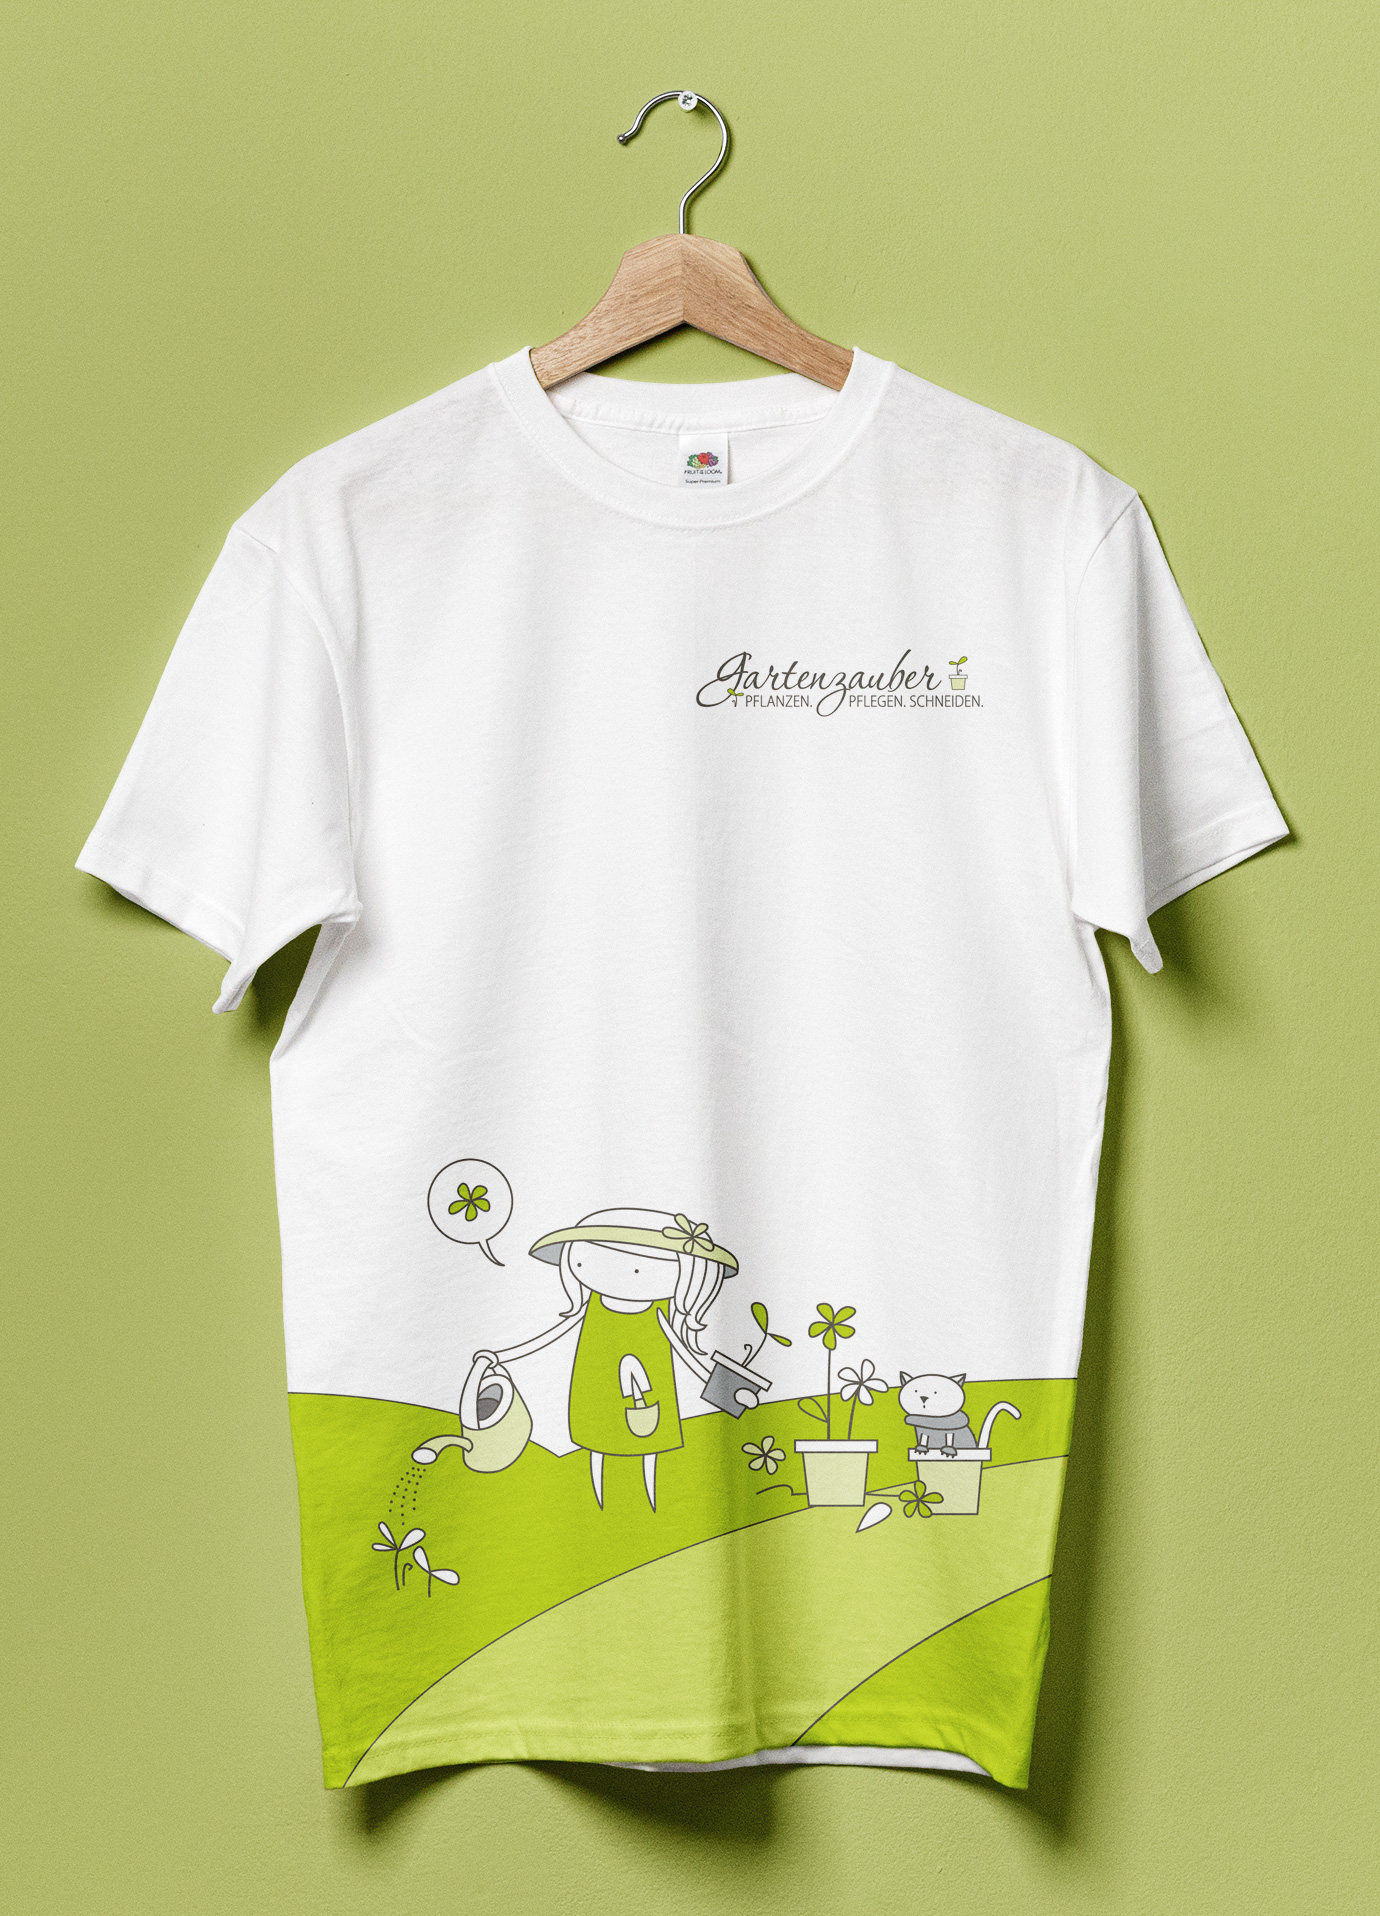 T-Shirt-Design für Gartenzauber by Buero Maiwald